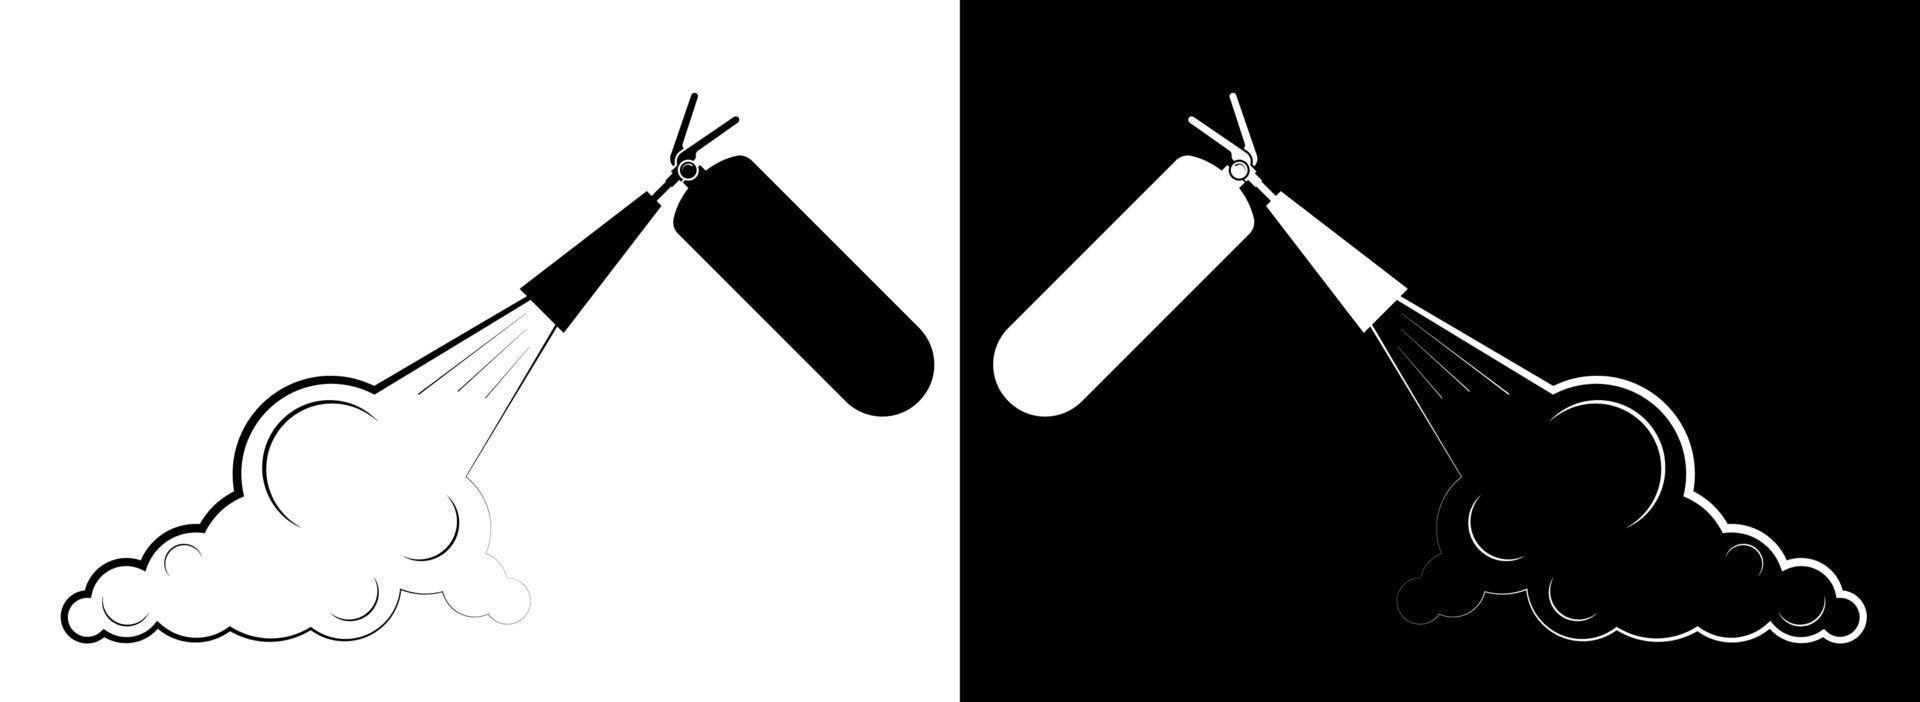 brandblusser blust een brand. pictogram in zwart-wit stijl. technische tekens en symbolen. geïsoleerde vector